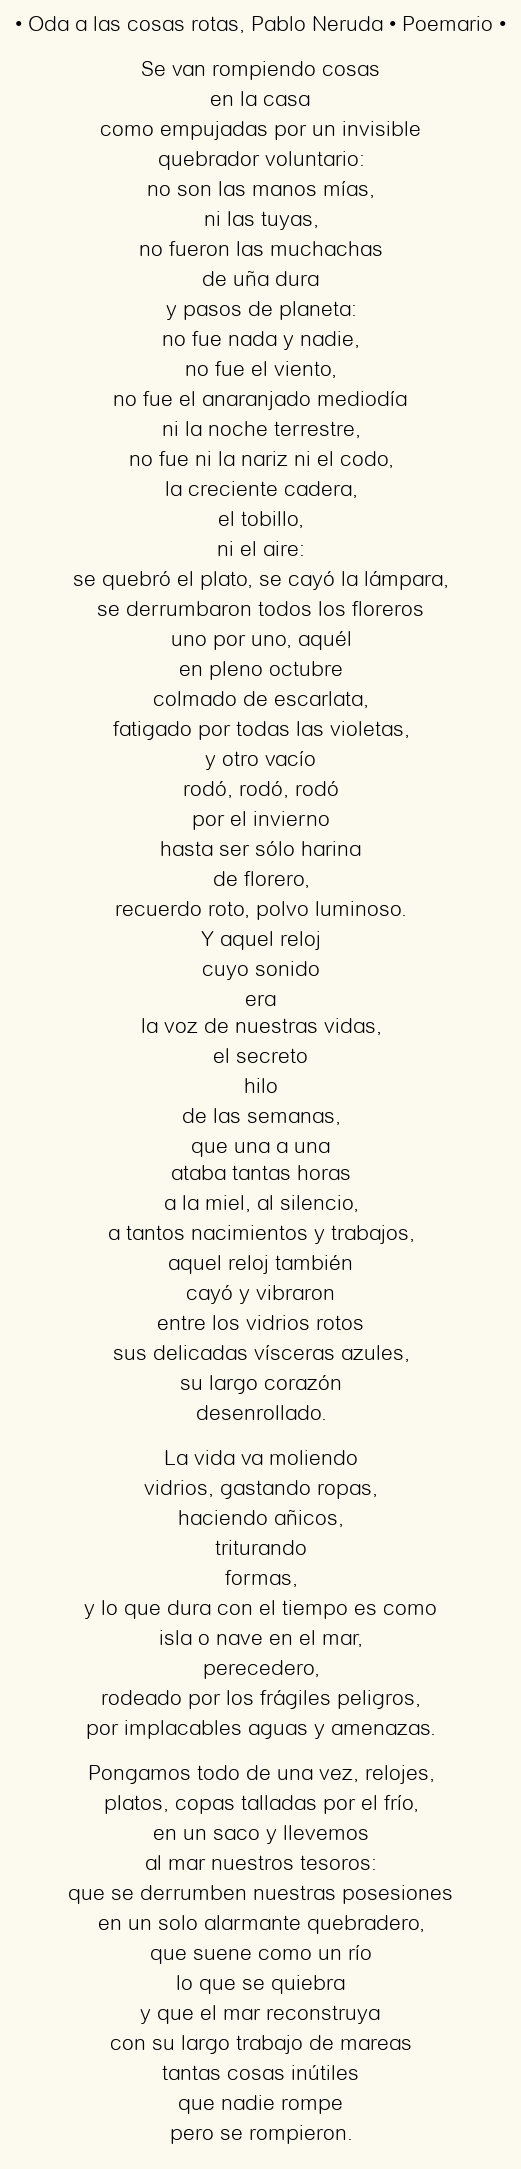 Imagen con el poema Oda a las cosas rotas, por Pablo Neruda